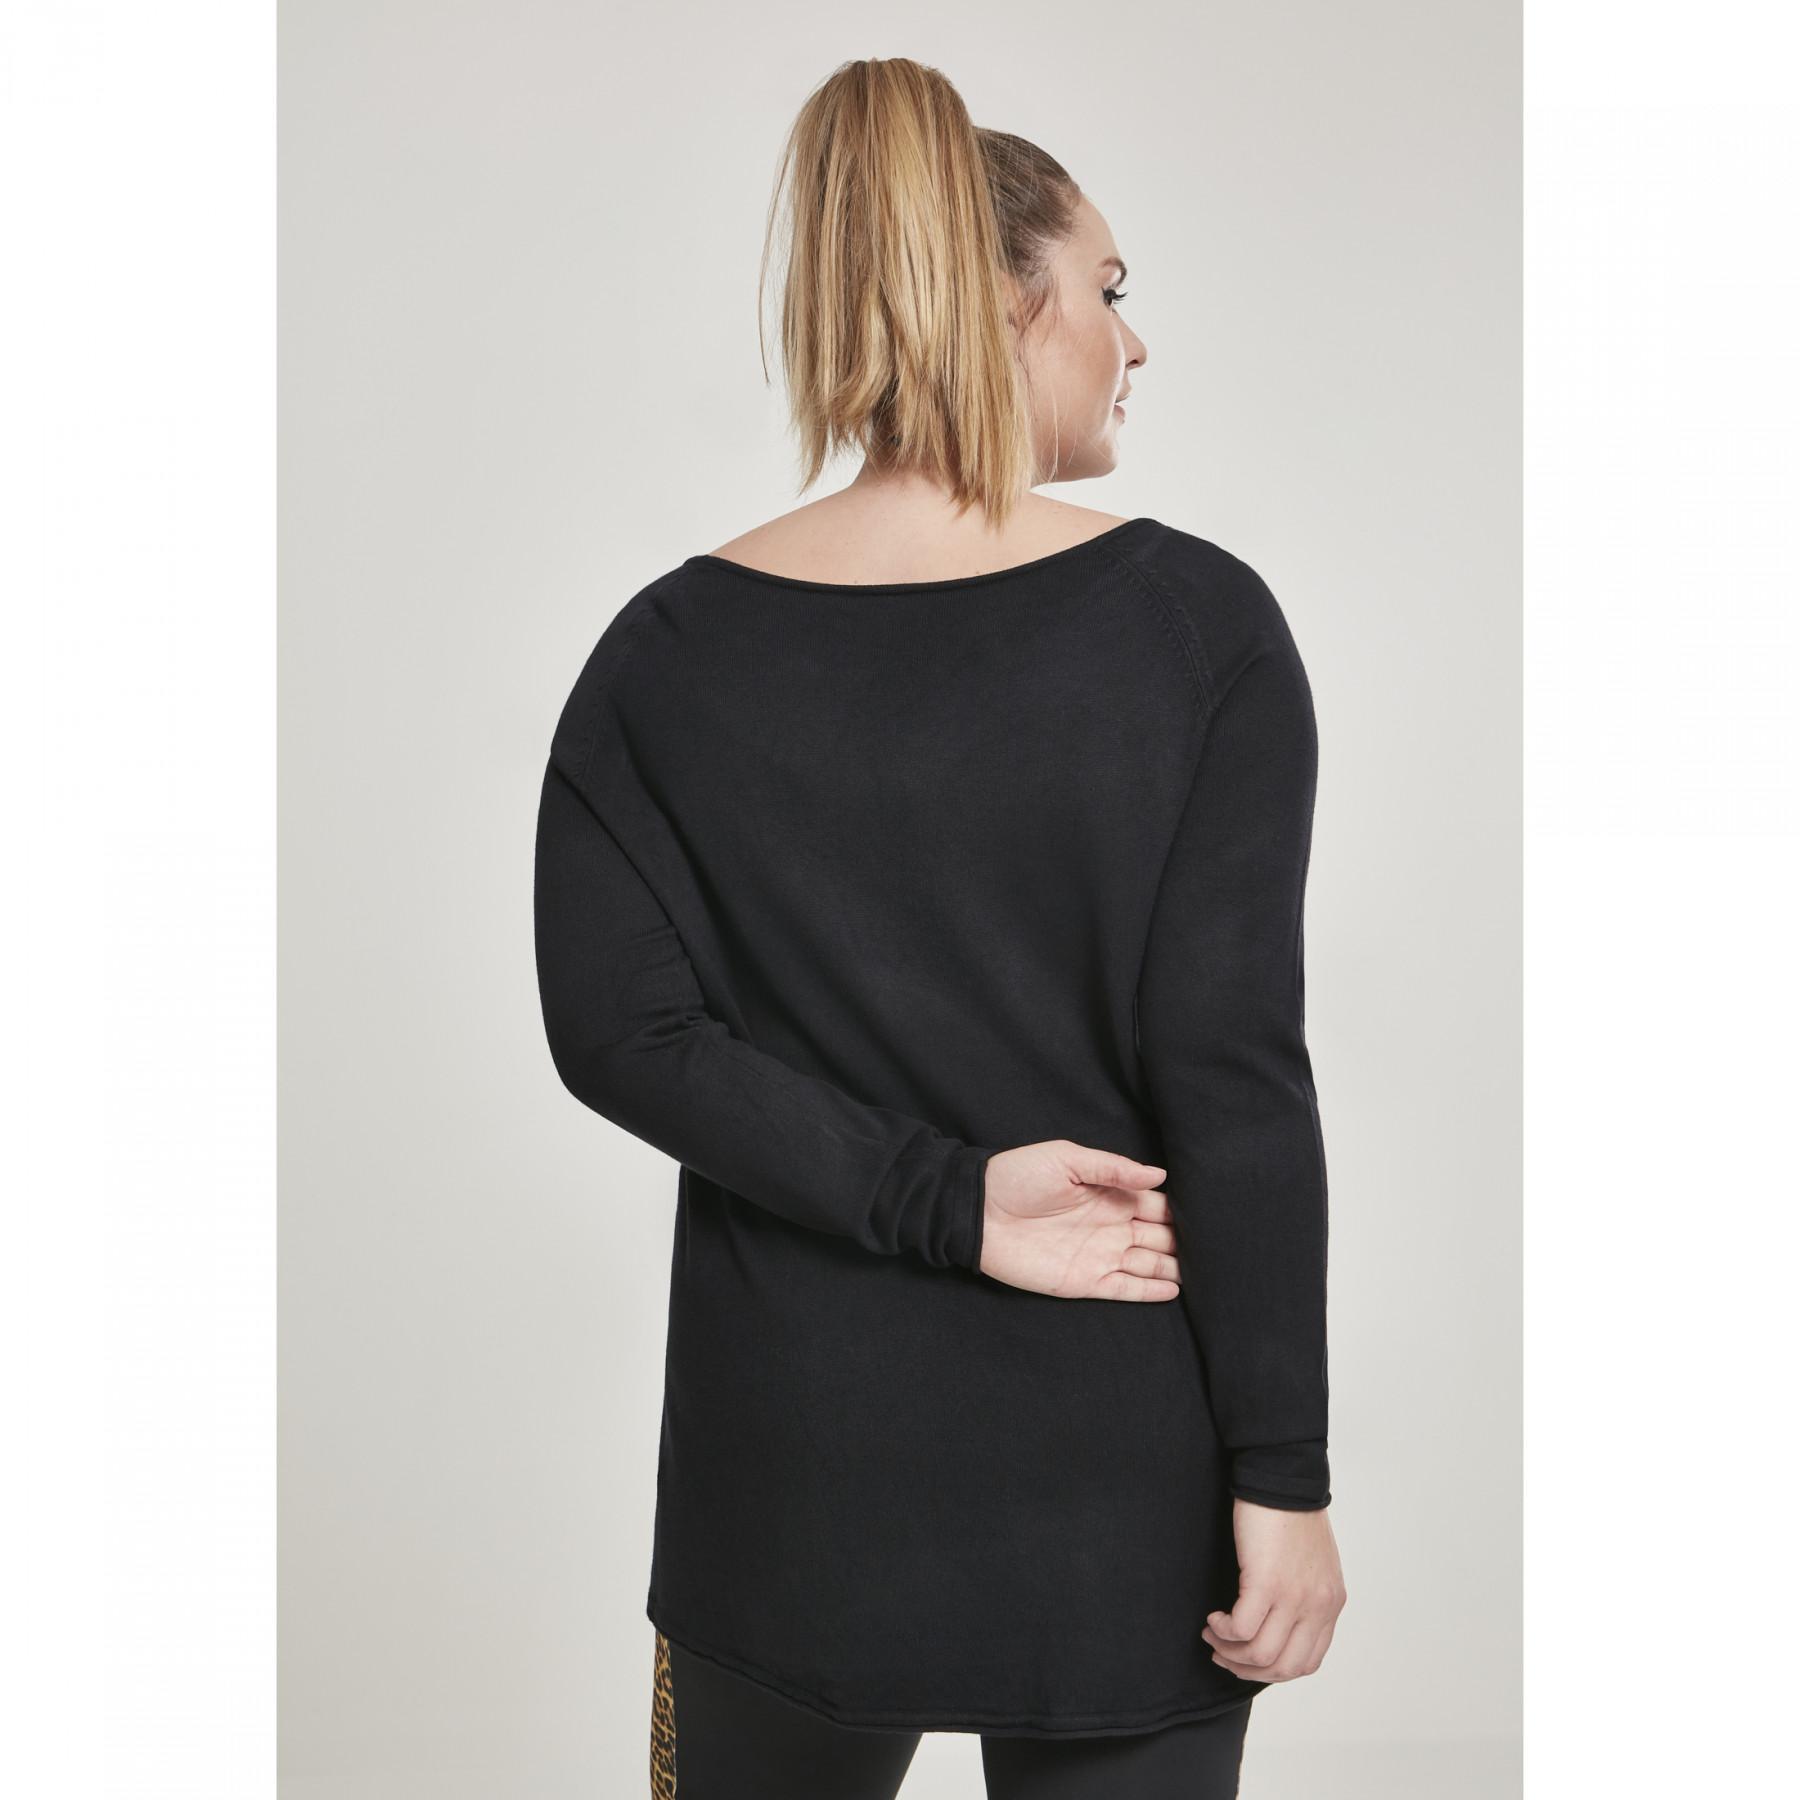 Woman's Urban Classic raglan long sweater bra